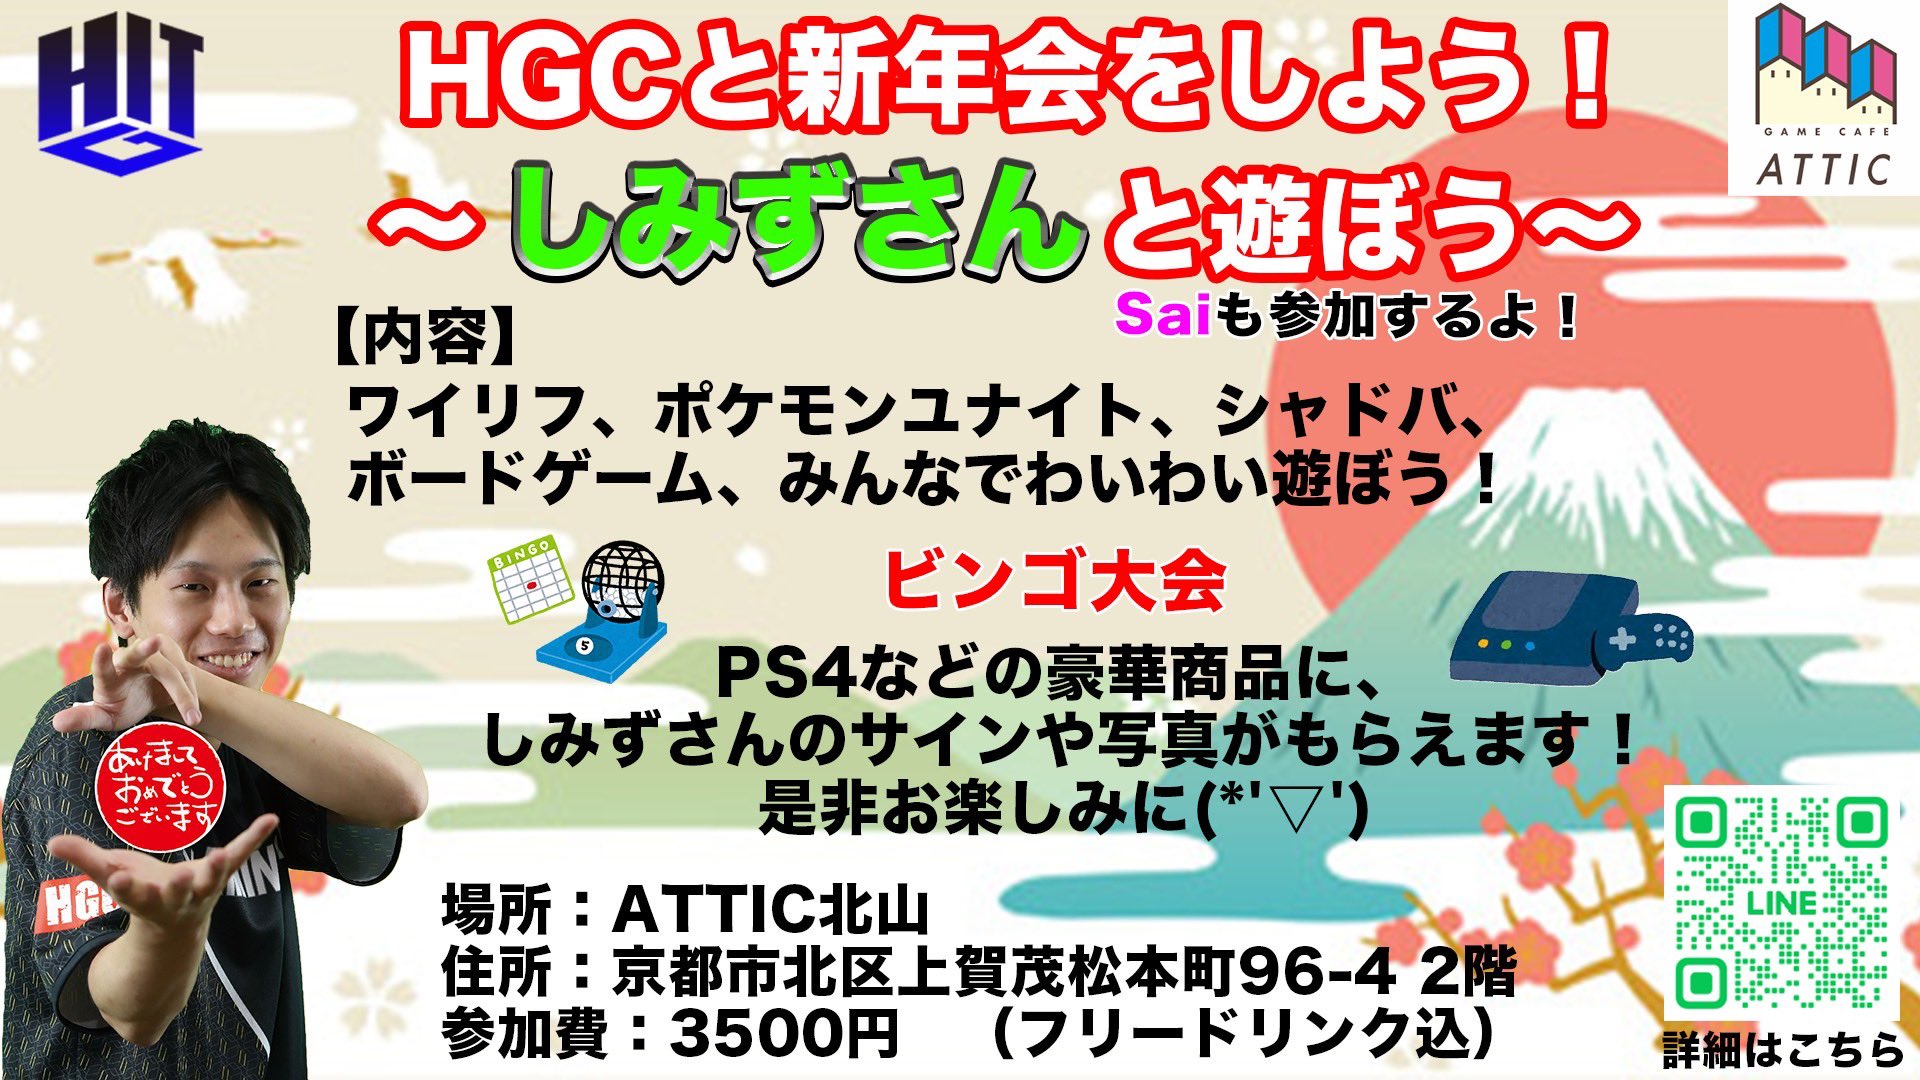  1月15日(日) 13:00～18:00【イベント】HGC新年会 ボドゲイベント